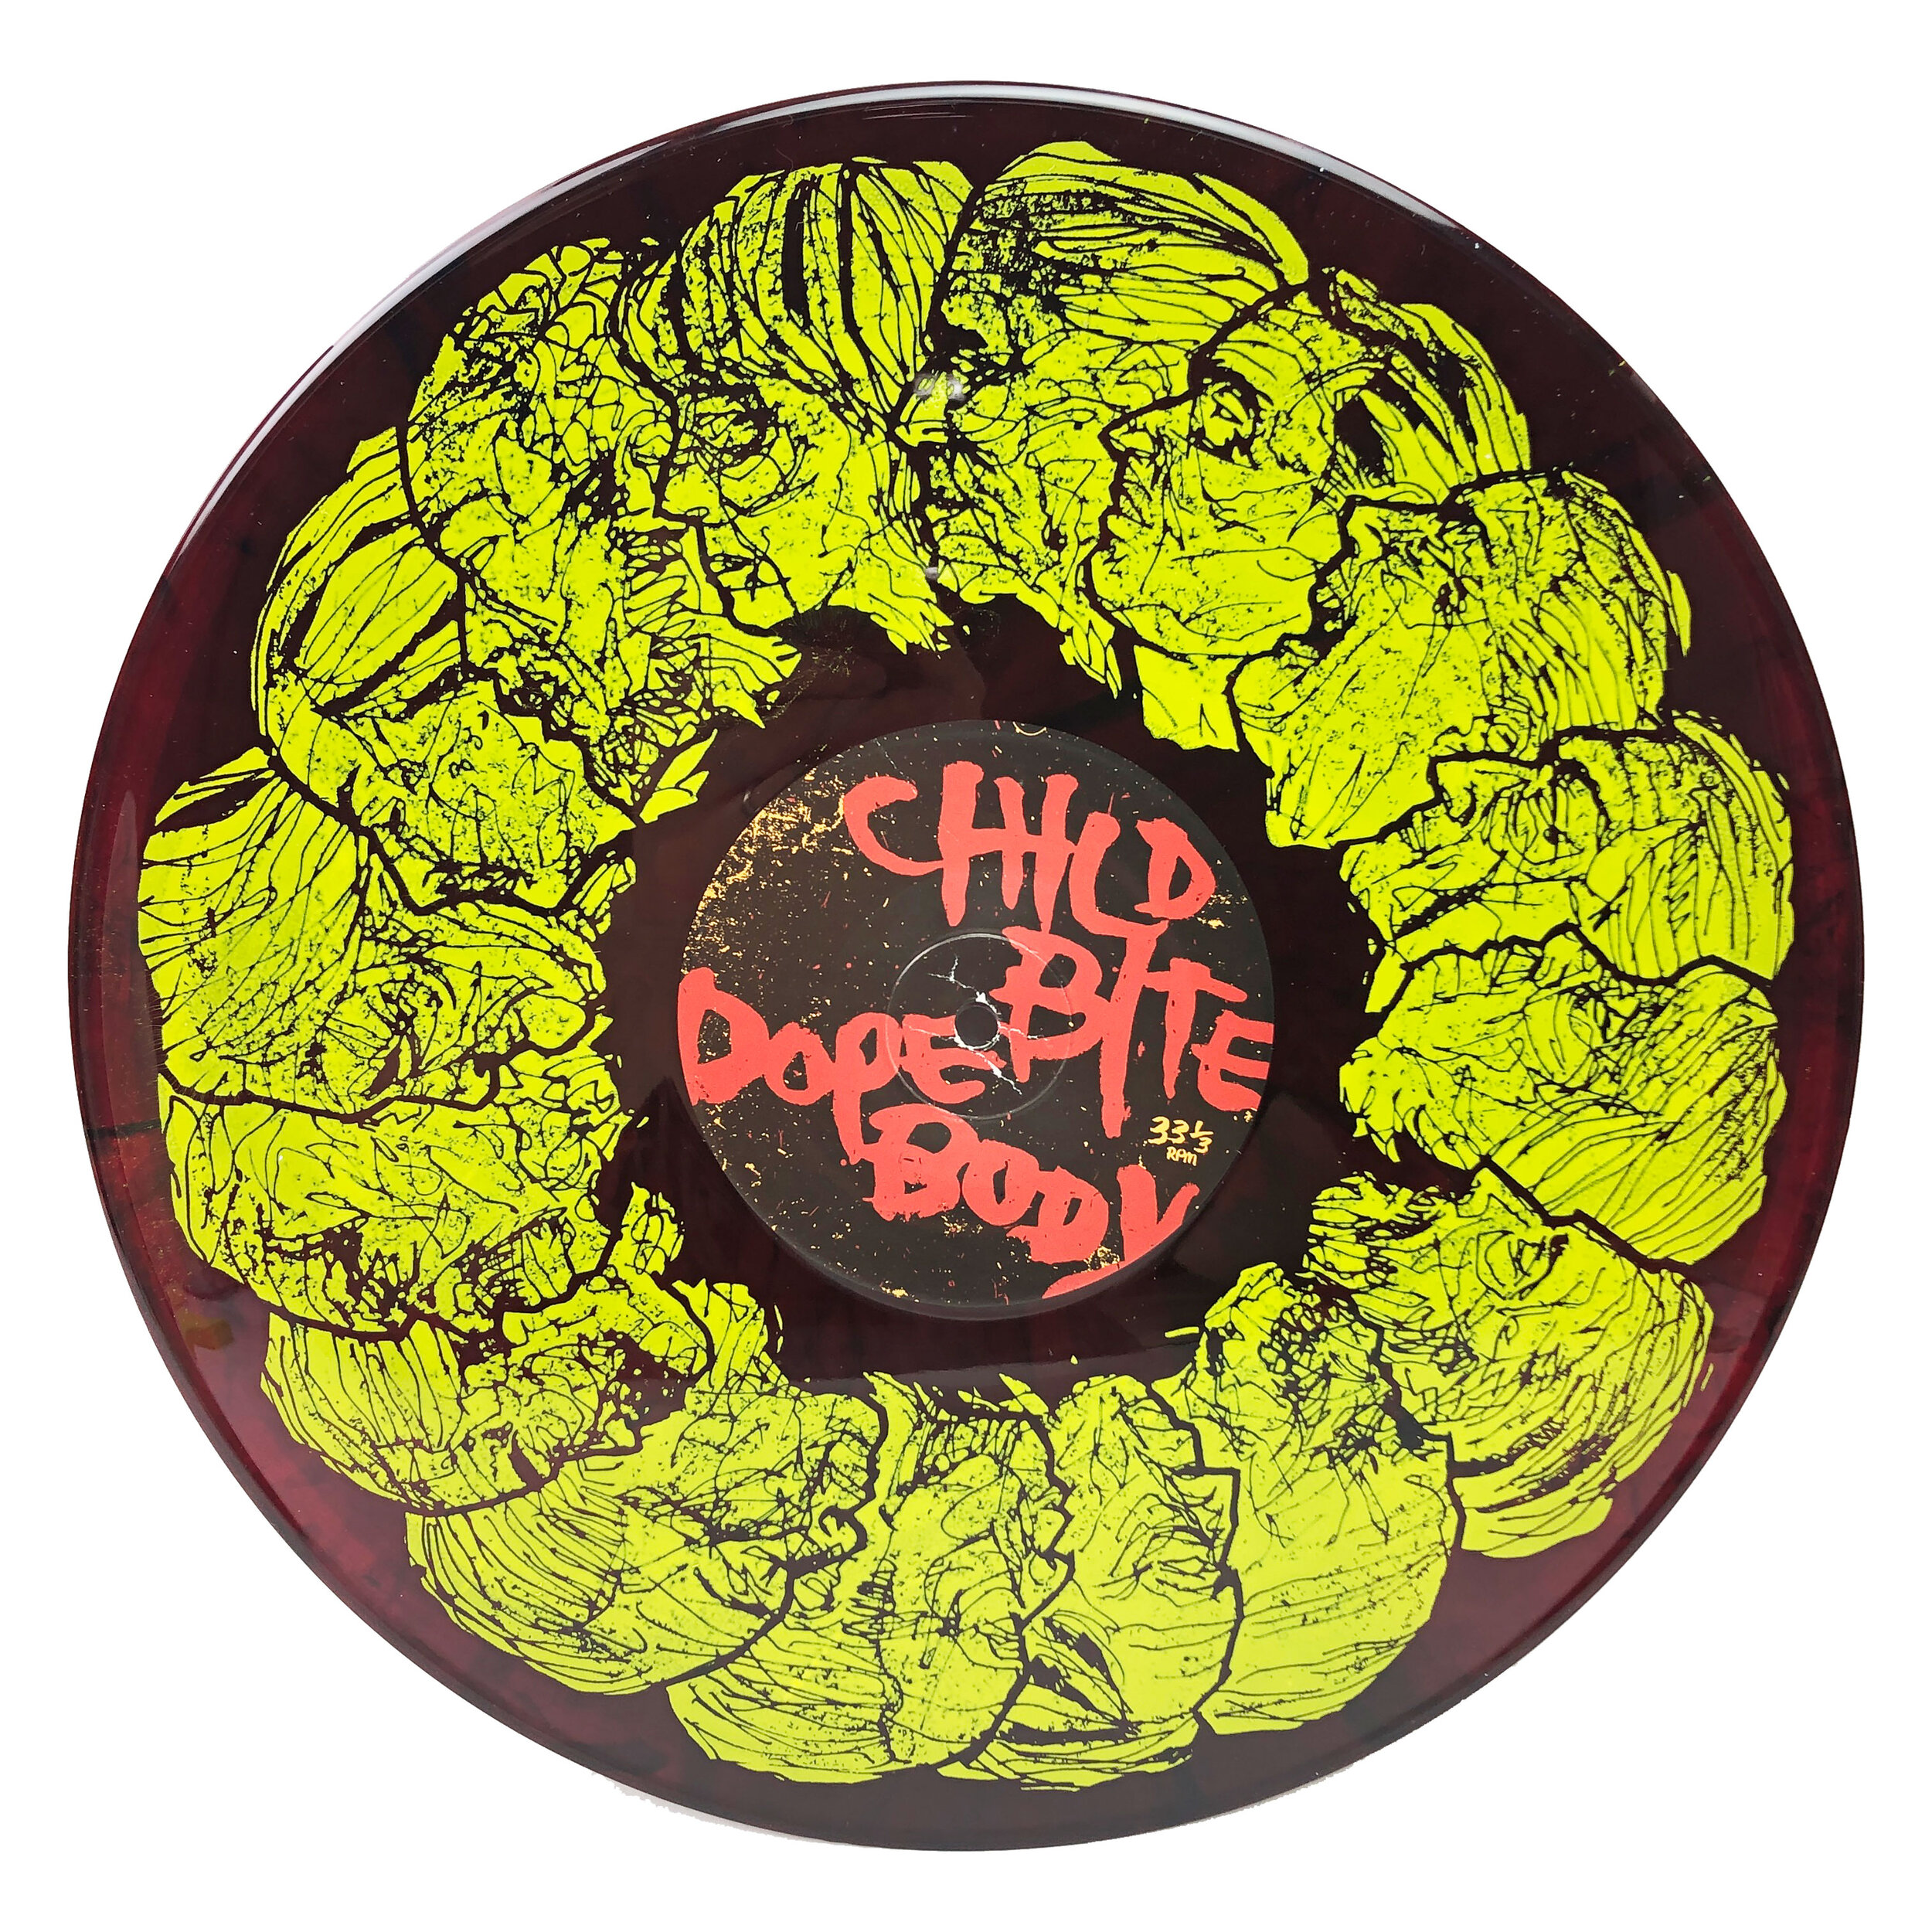 FAR-035 Child Bite / Dope Body split LP